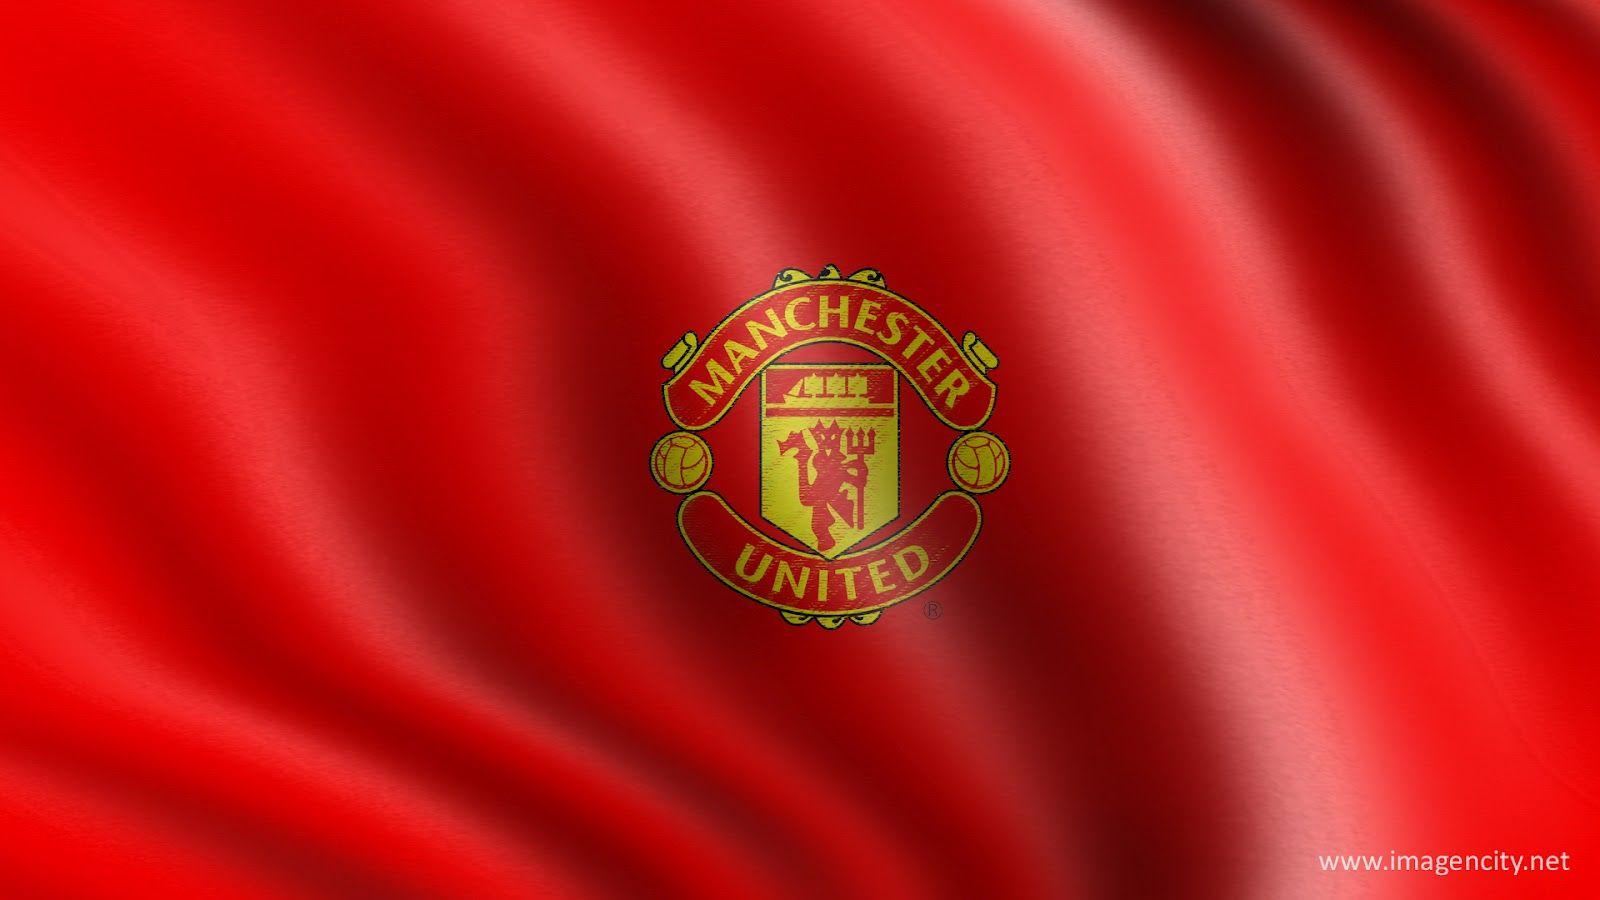 Manchester United Wallpaper 2012 HD 001. Desktop Football Wallpaper